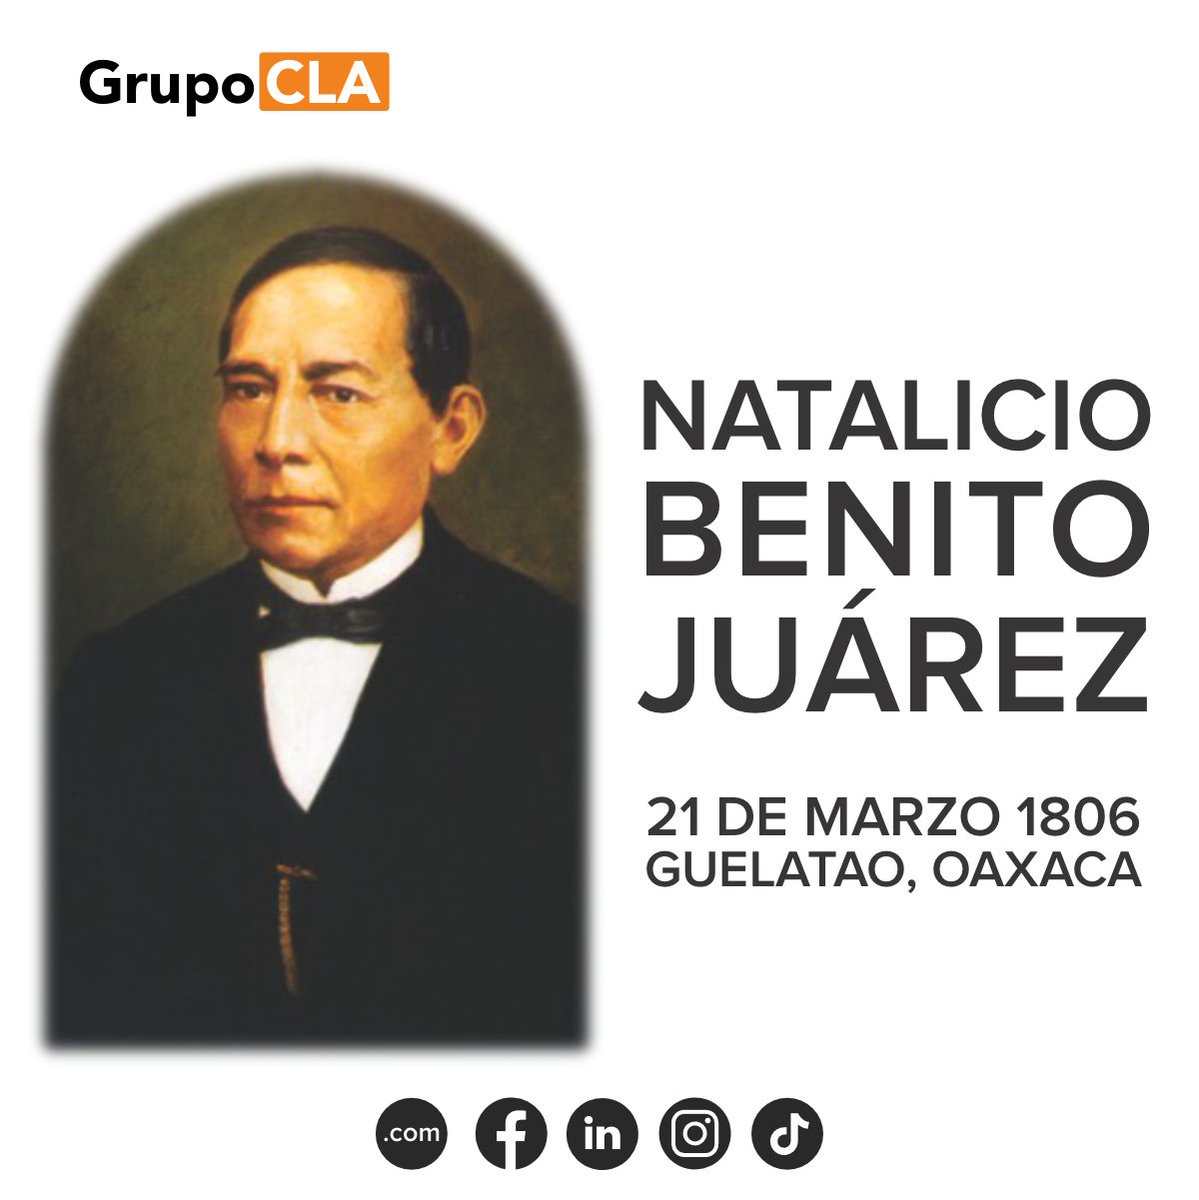 Benito Juárez, fue un abogado y político mexicano, de origen indígena, presidente de México en varias ocasiones, del 21 de enero de 1858 al 18 de julio de 1872.

#GrupoCLA #SiempreEnMovimiento #21deMarzo #NatalicioDeBenitoJuárez #BenitoJuaréz